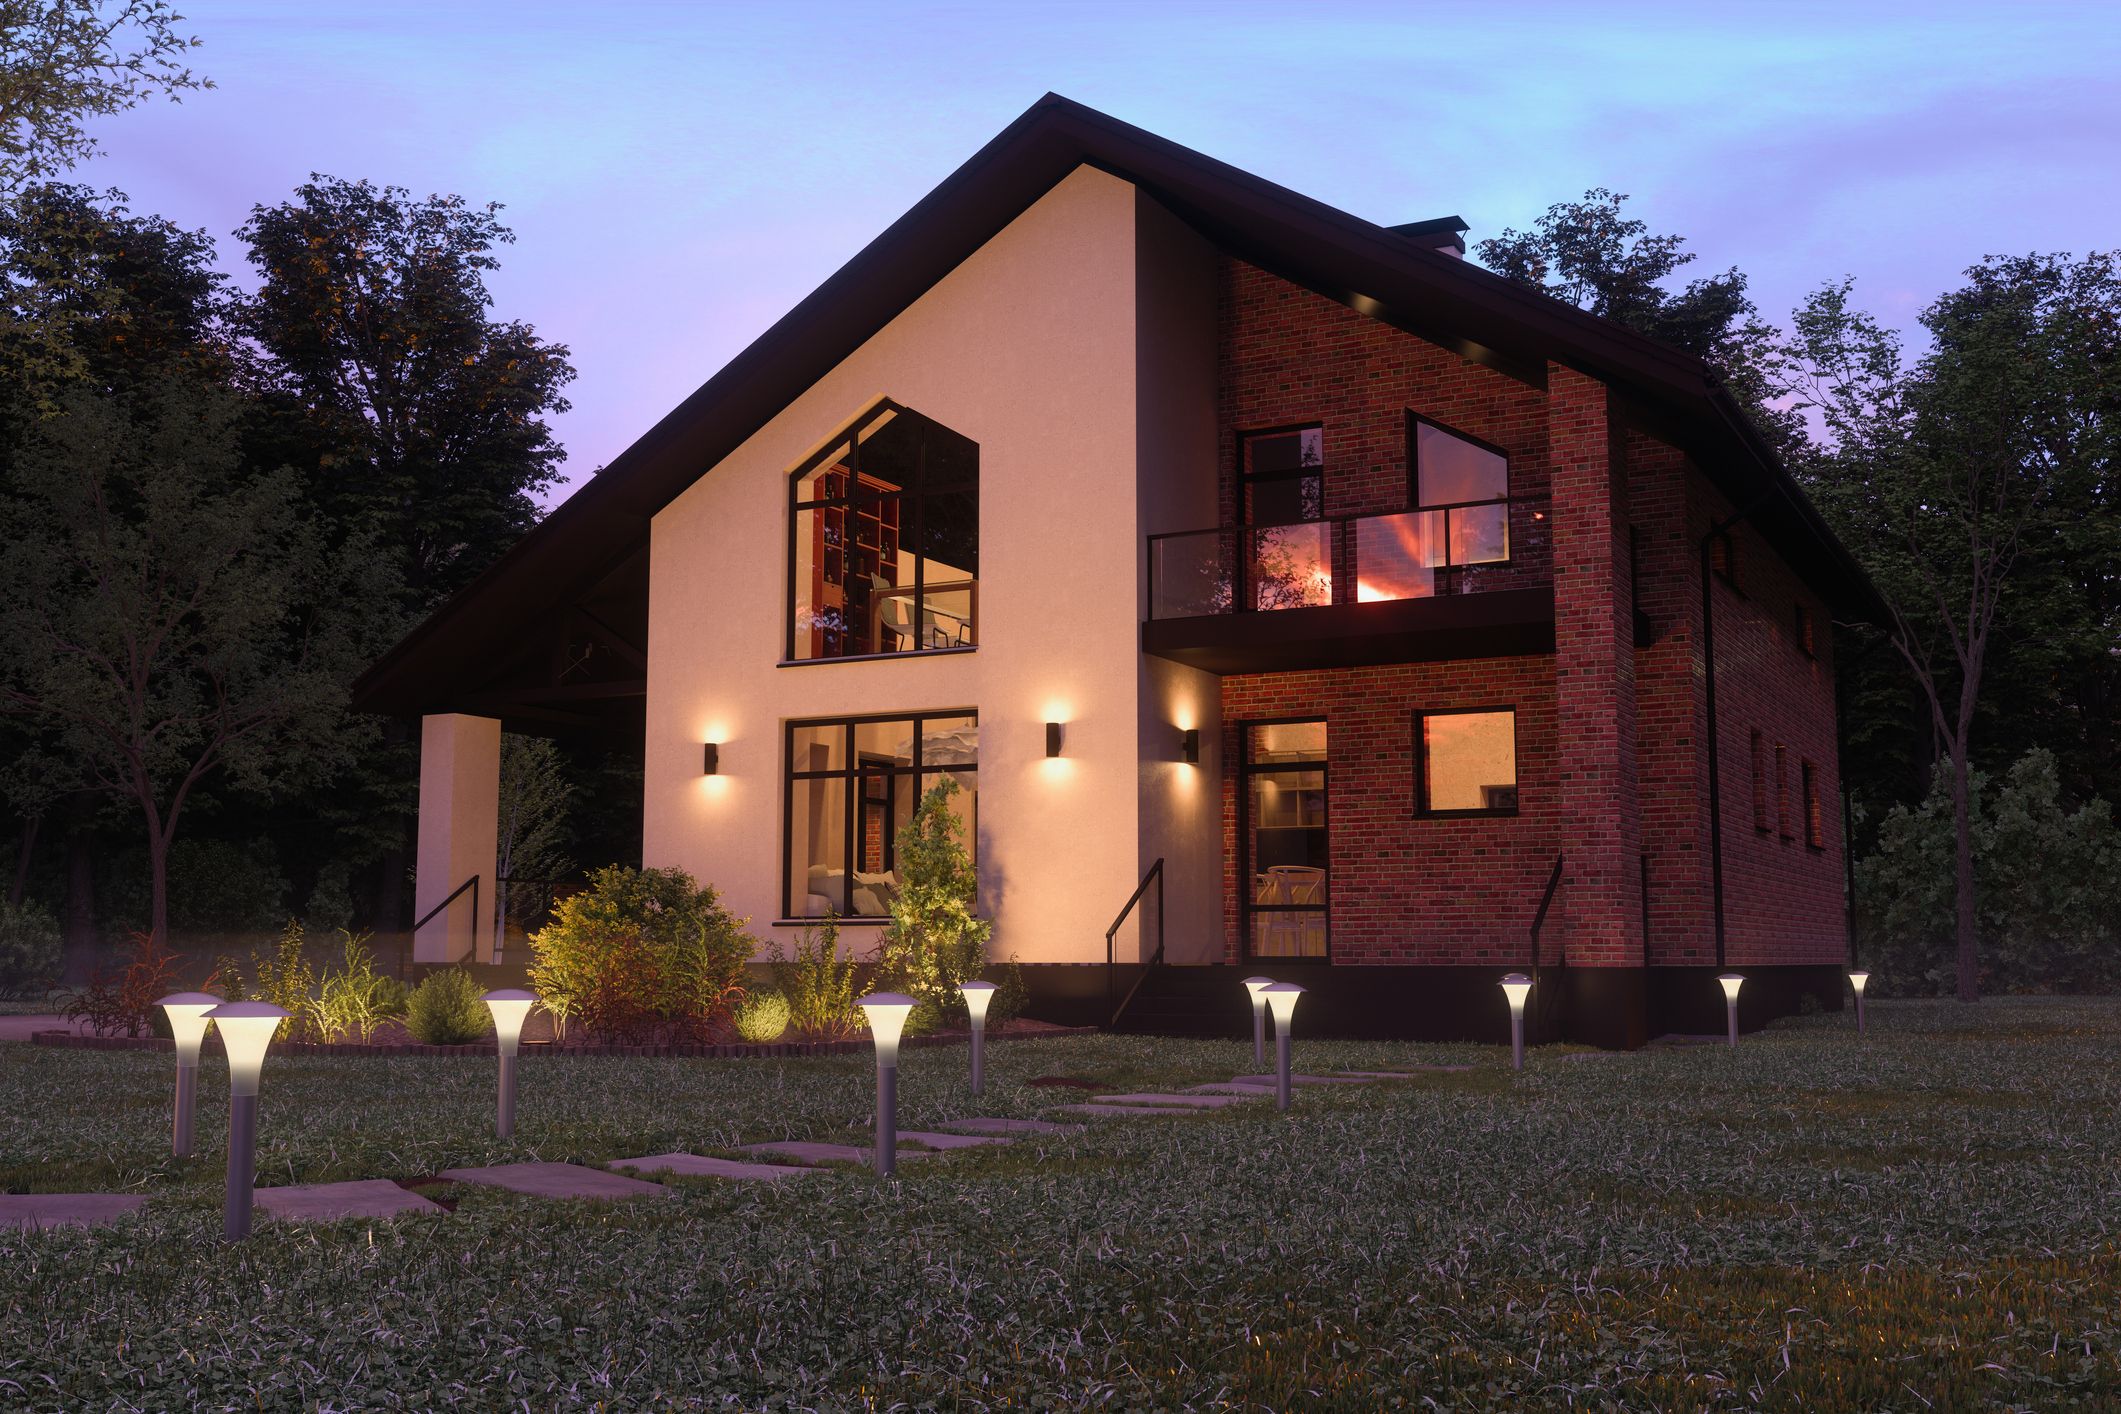 13 lámparas solares para iluminar la casa en verano ahorrando en